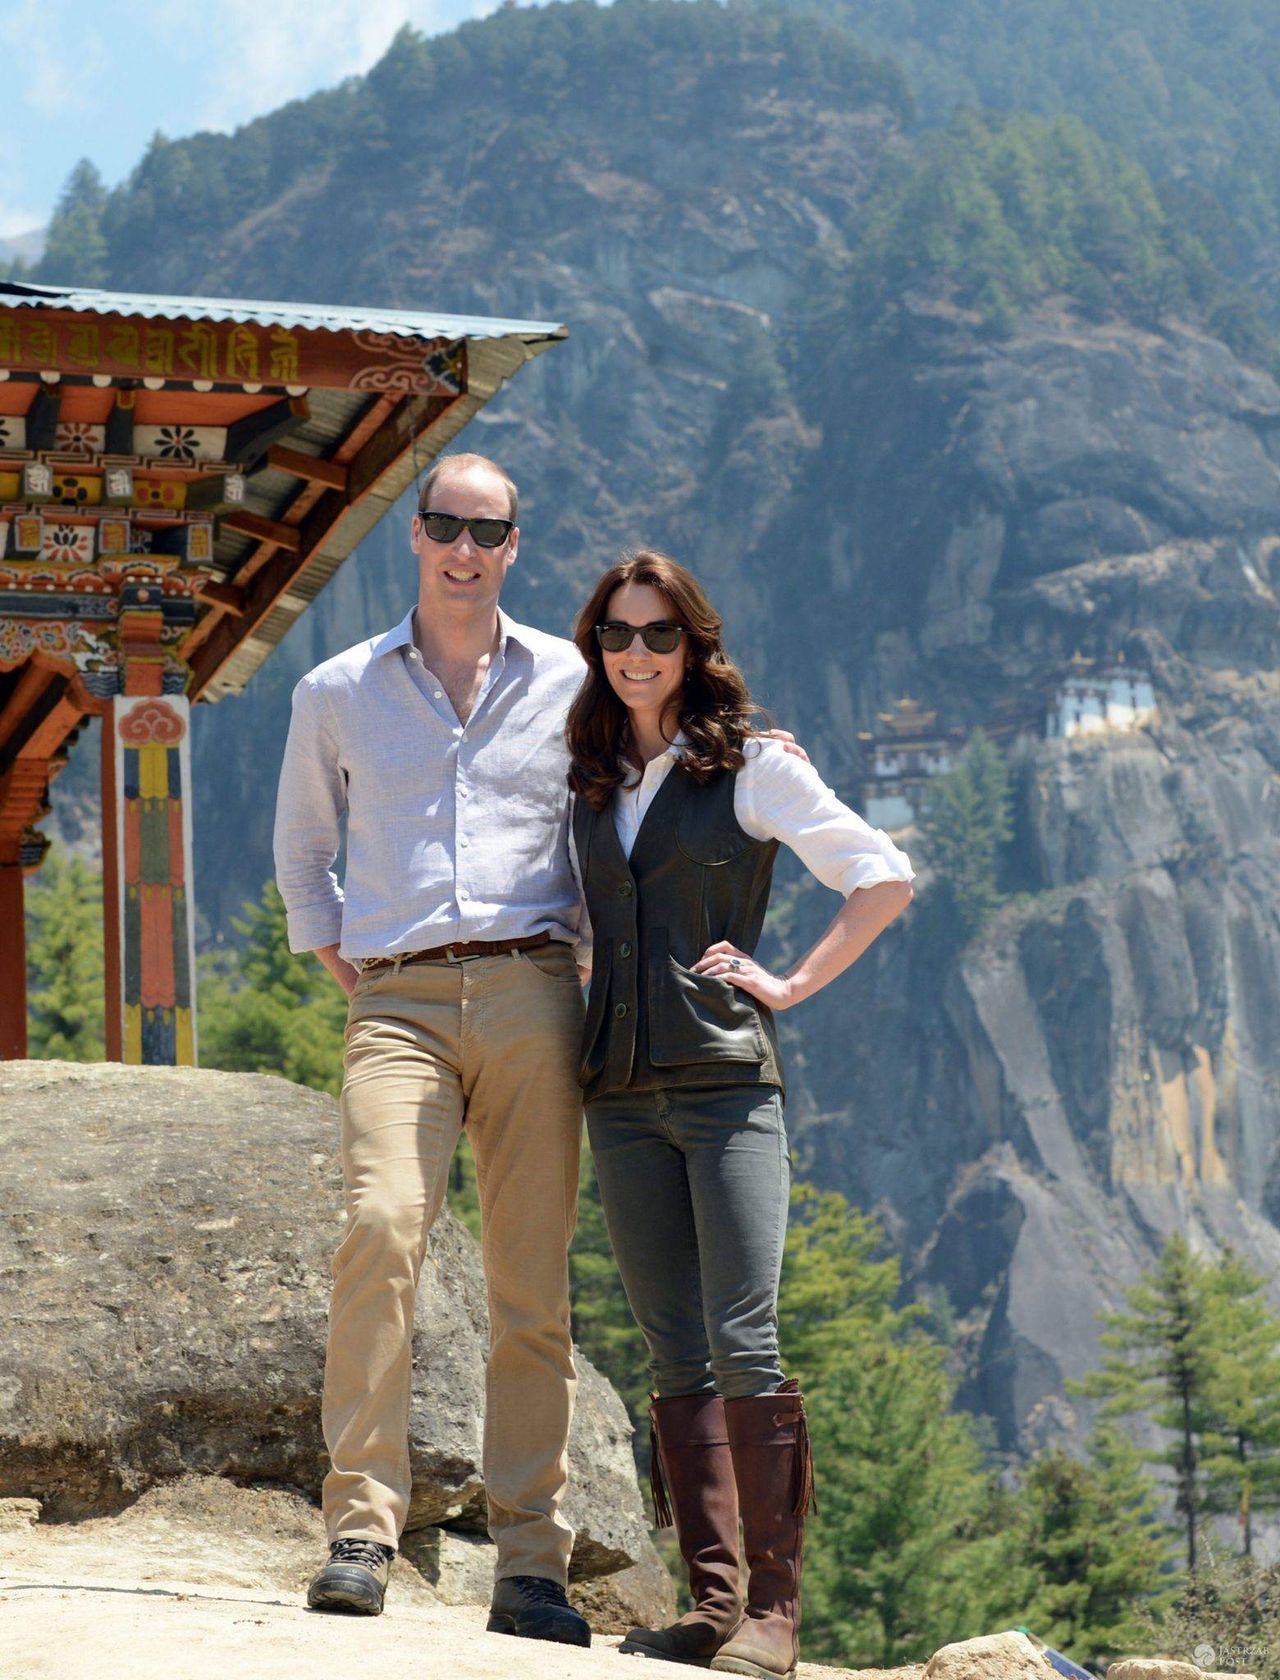 Księżna Kate i książę William odwiedzili klasztor Taktsang (Tygrysie Gniazdo) w Bhutanie (fot. ONS)